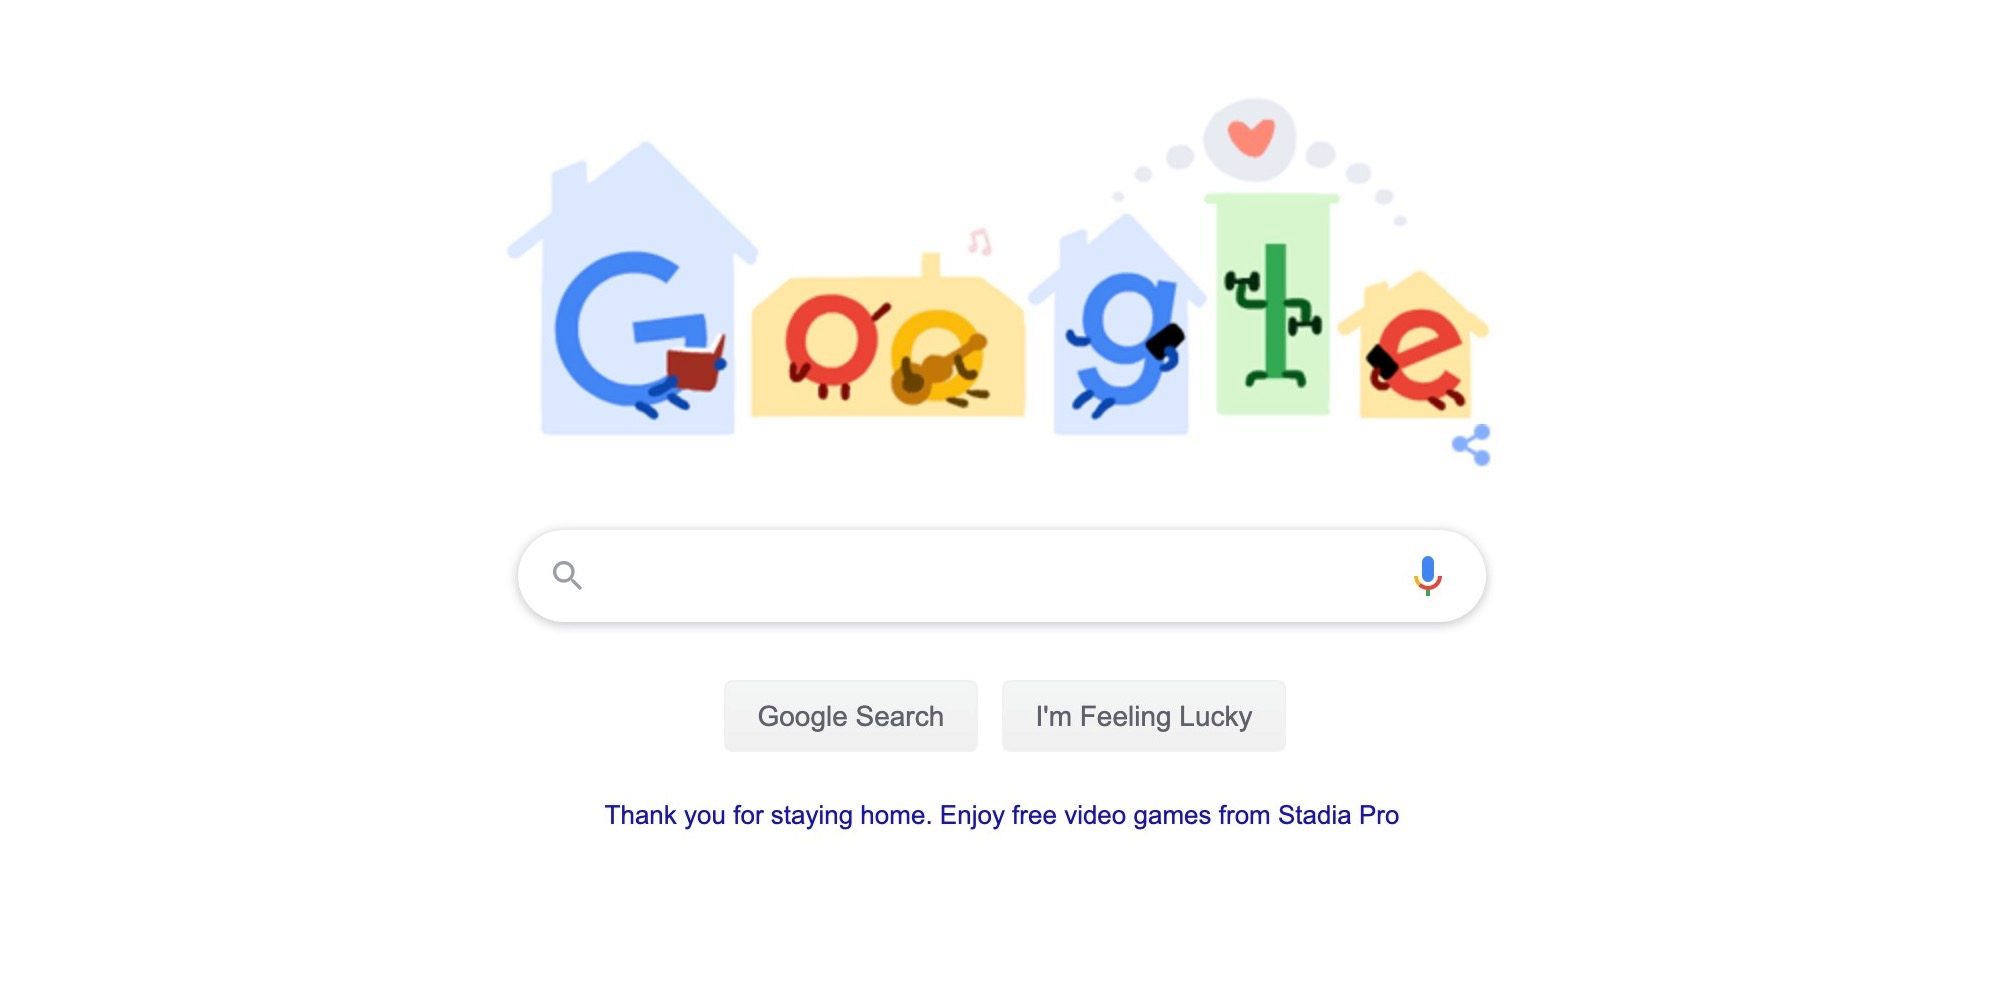 Google․com anuncia Stadia Pro, videogame gratuito como remédio para ficar em casa